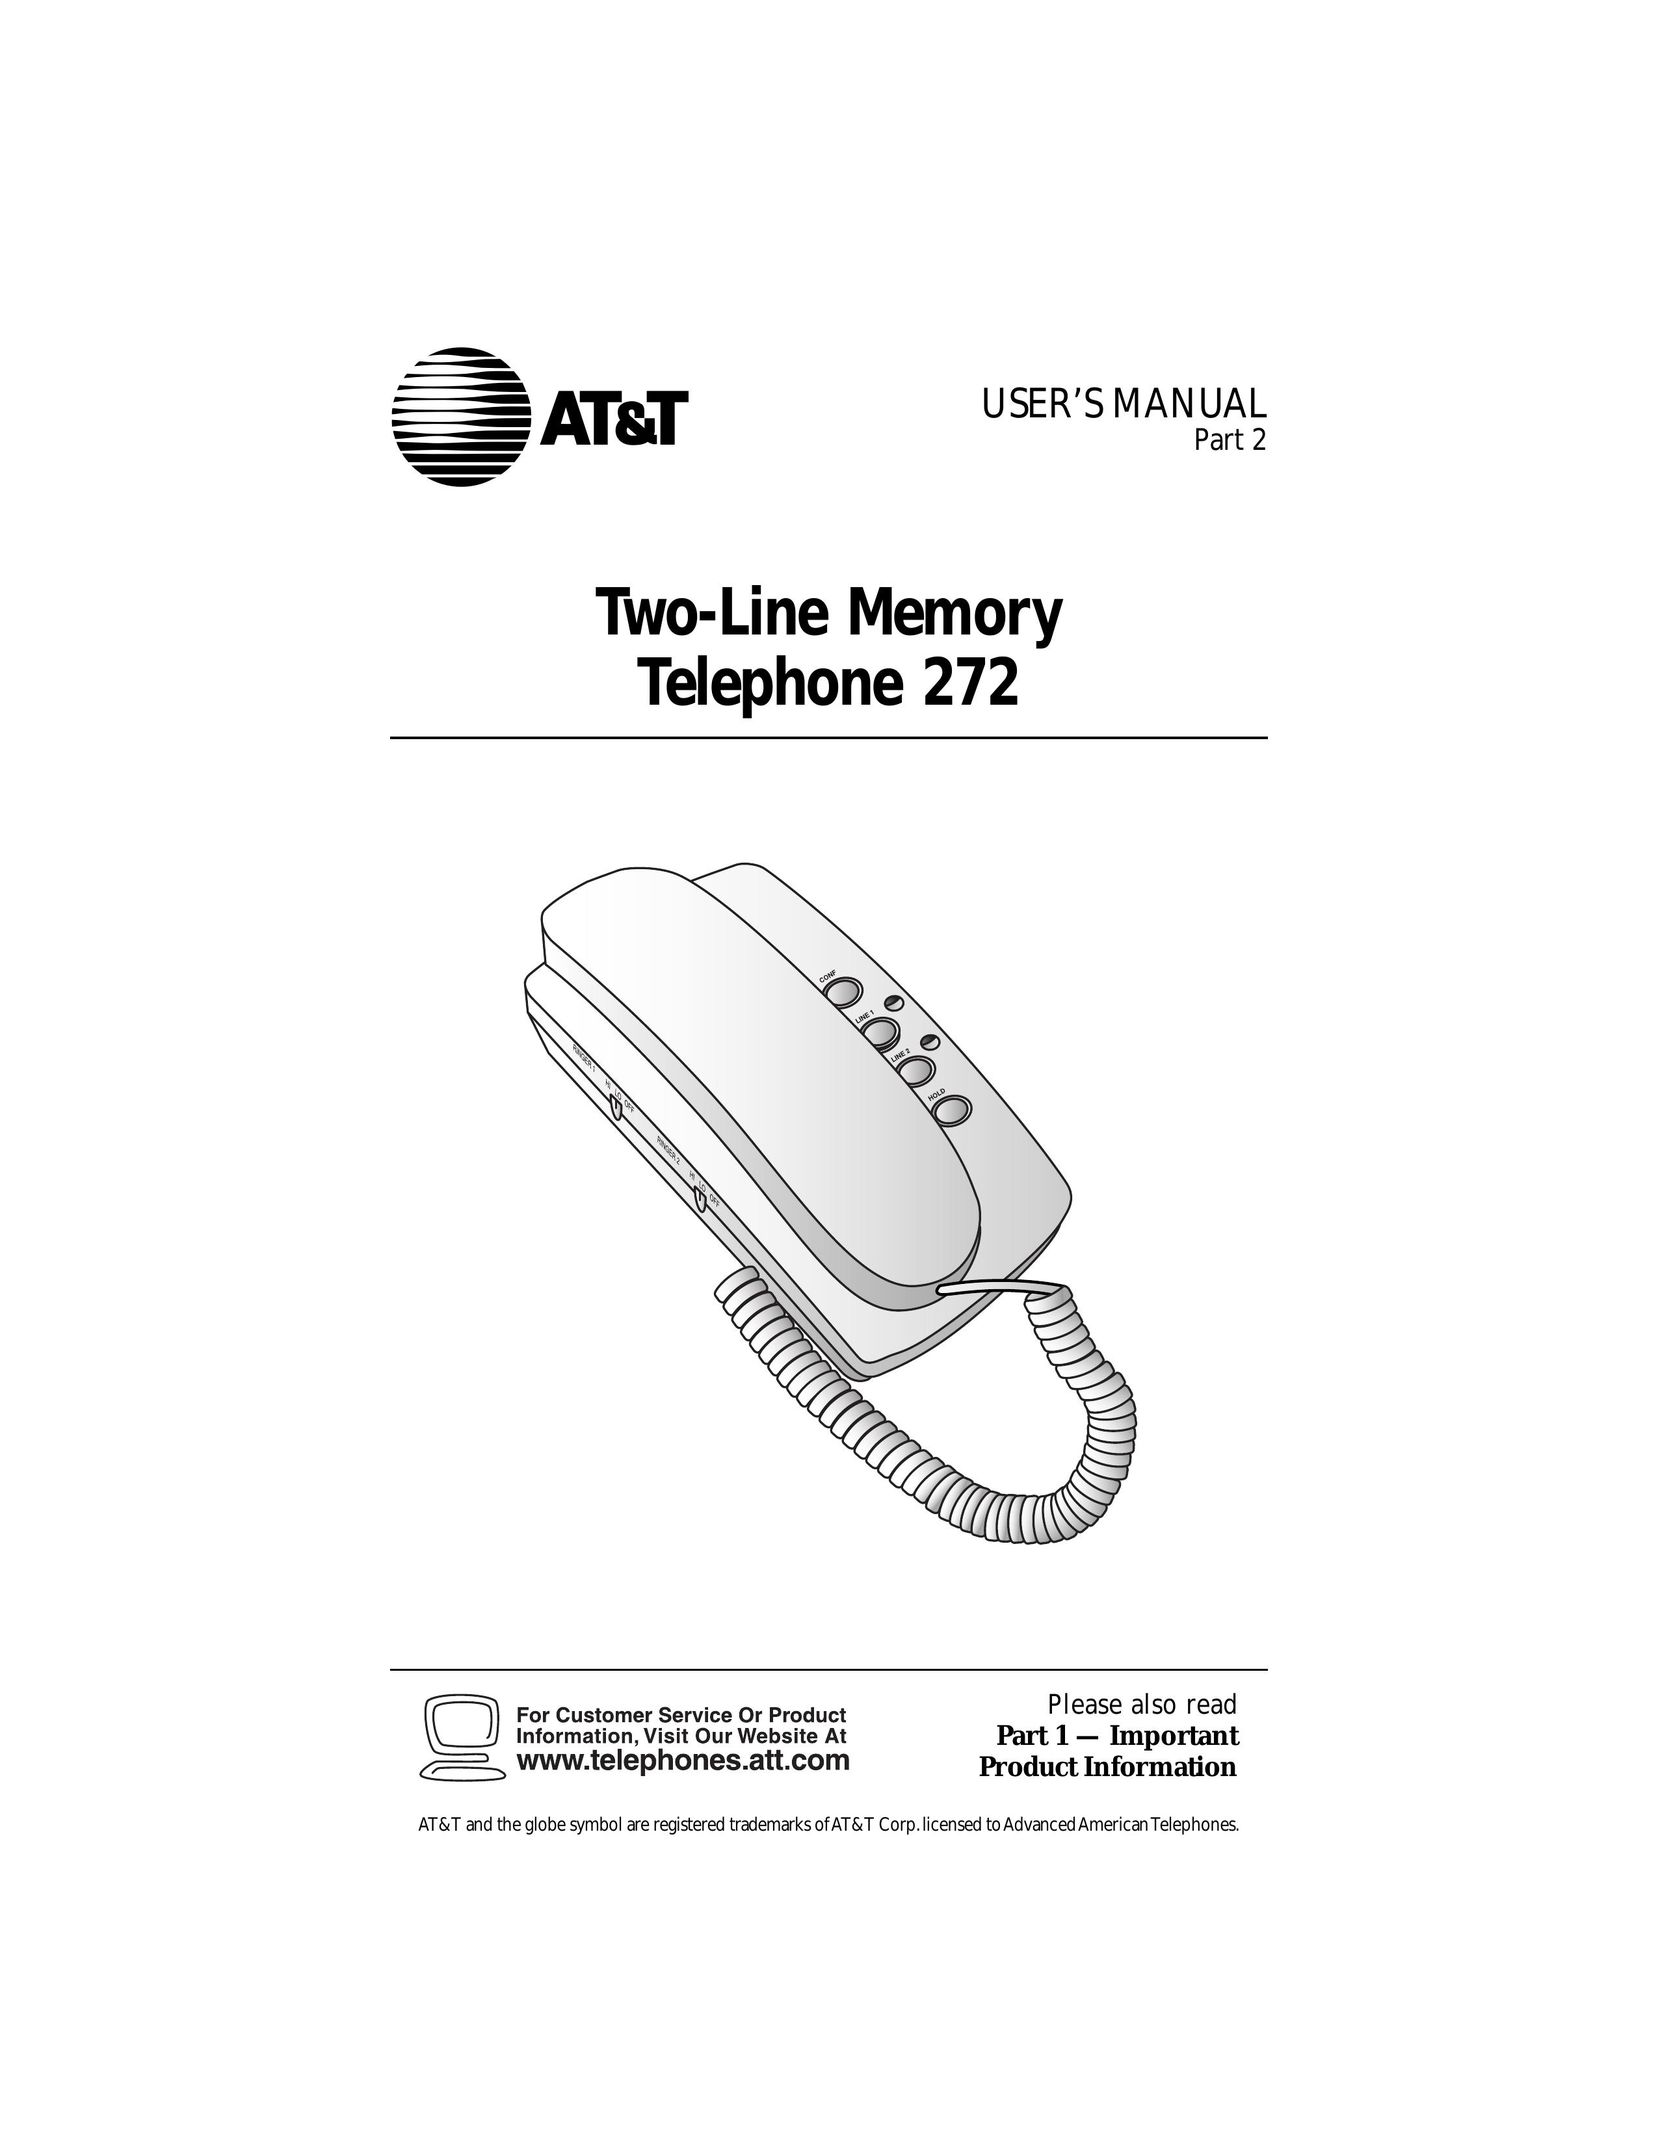 AT&T 272 Telephone User Manual